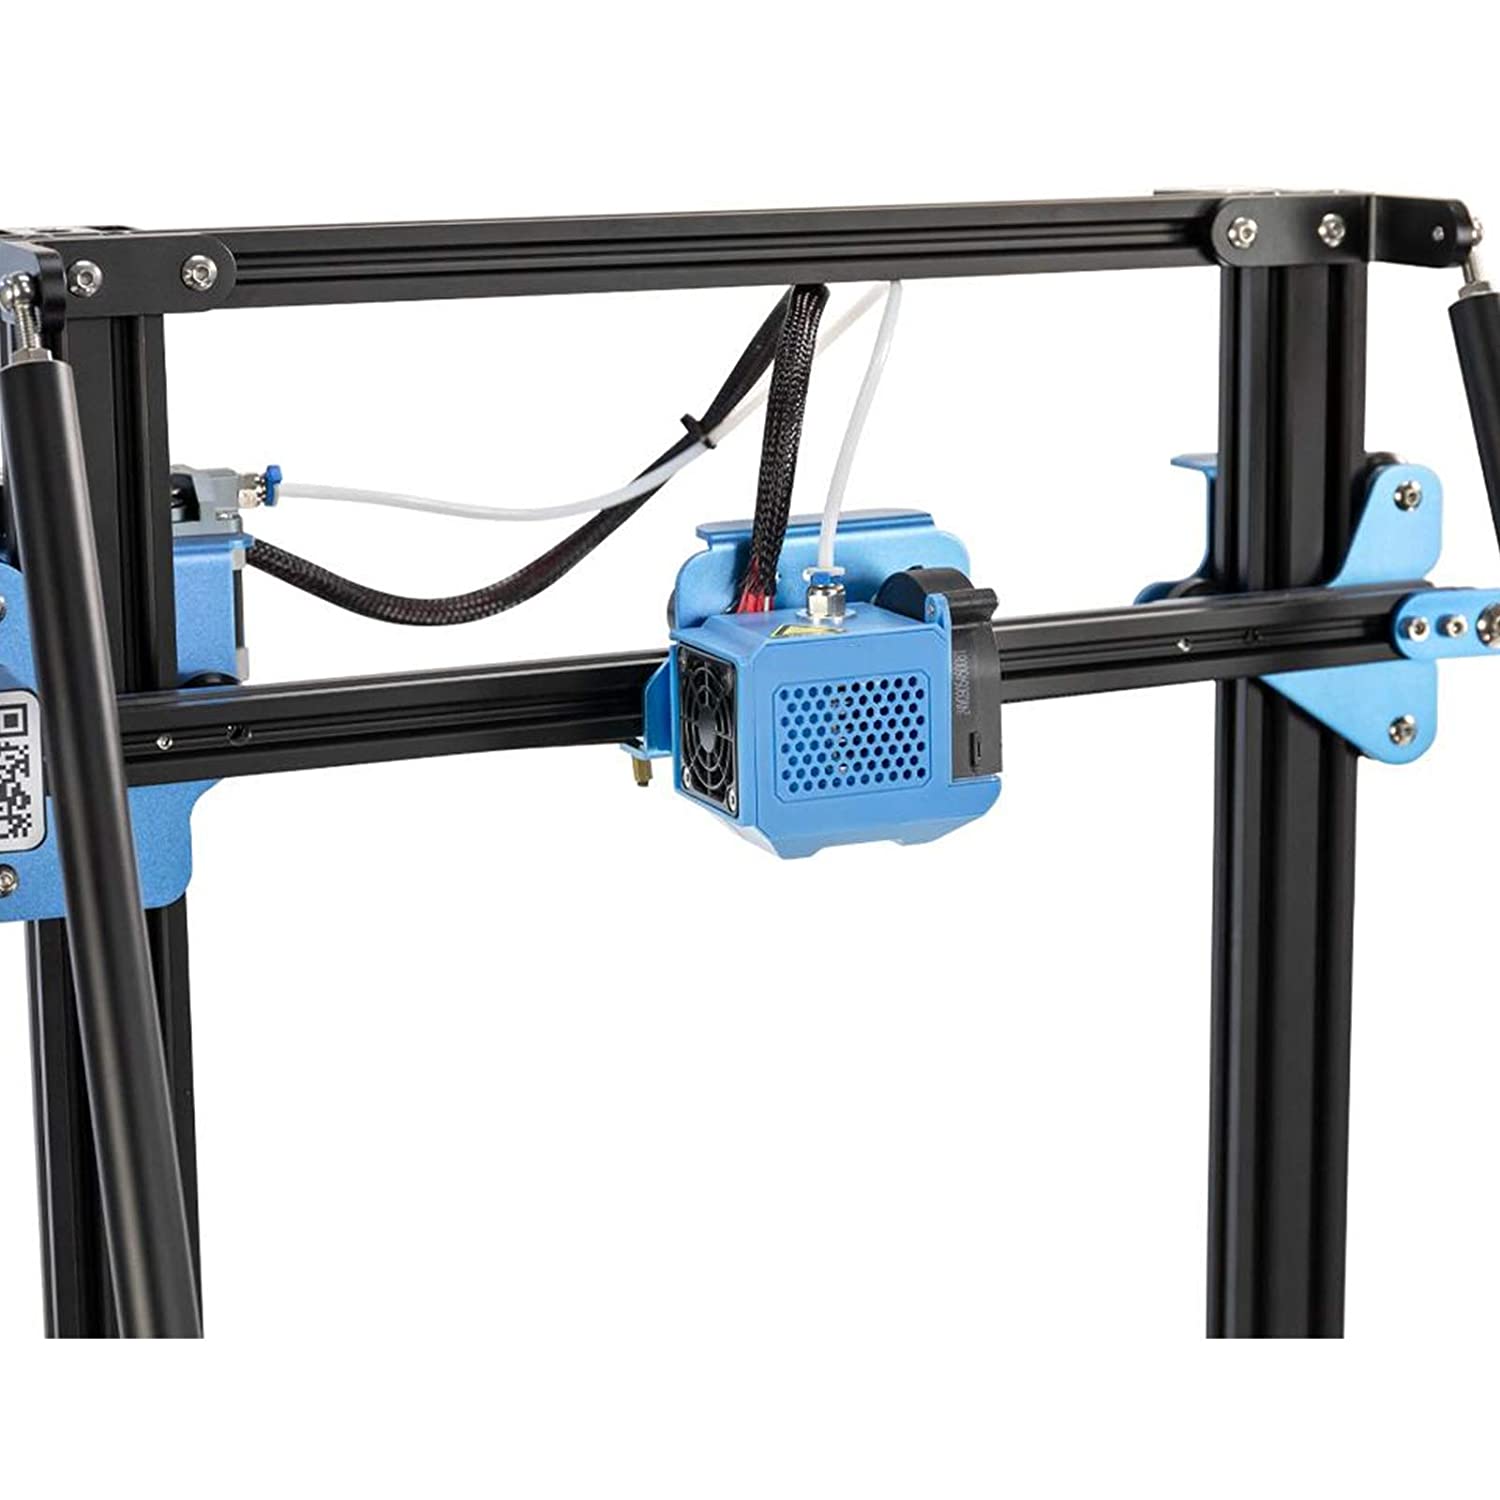 Fully Assembled Extruder Hotend Kit for Creality CR-10 V2 3D Printer